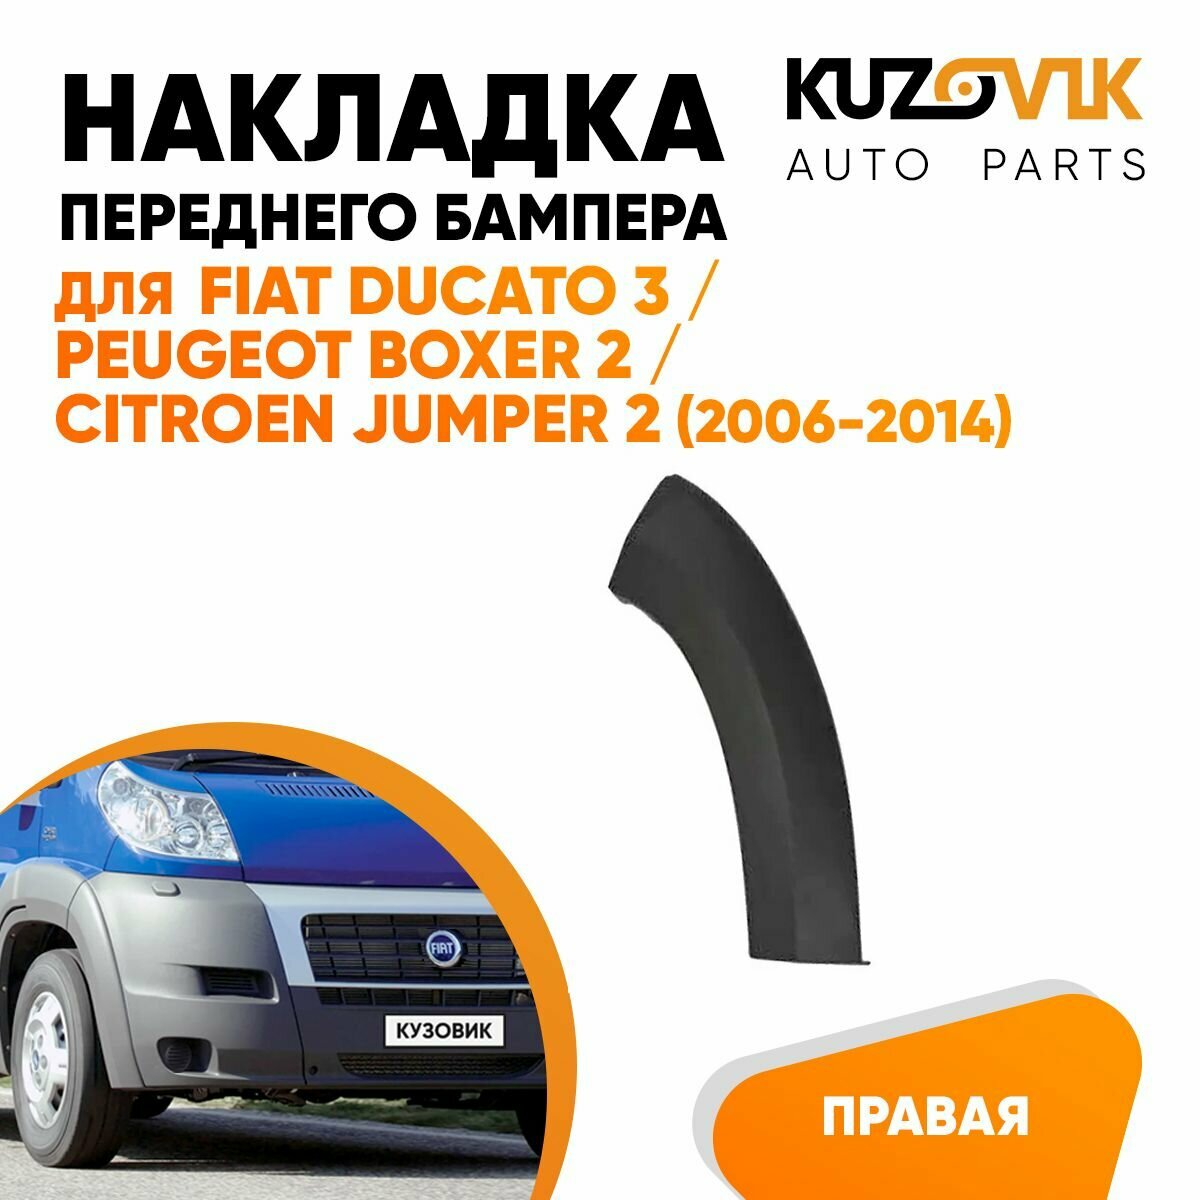 Накладка переднего бампера, расширитель для Фиат Дукато Fiat Ducato 3 / Пежо Боксер Peugeot Boxer 2 / Ситроен Джампер Citroen Jumper 2 (2006-2014) правая